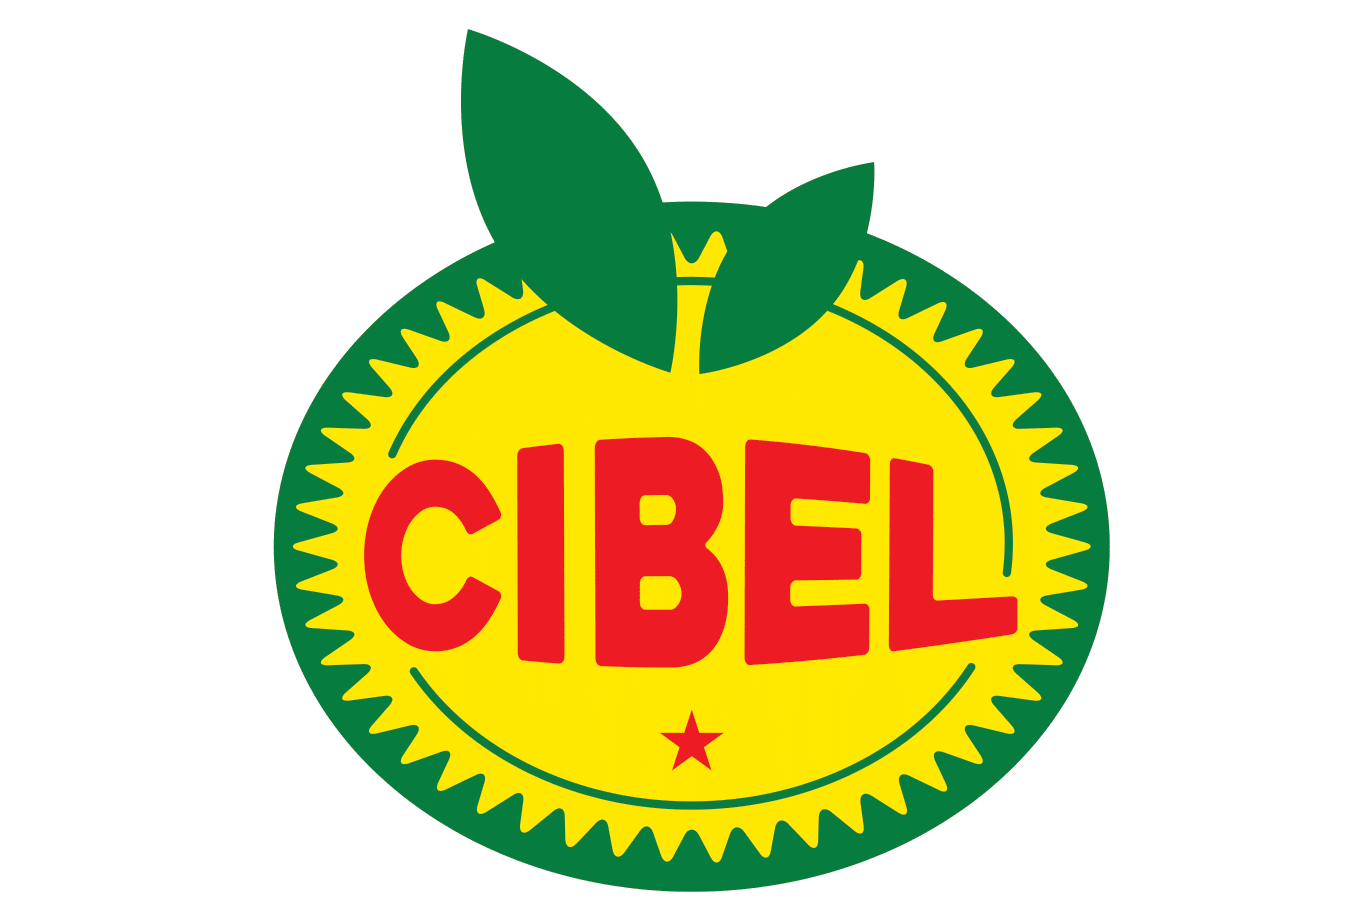 Cibel